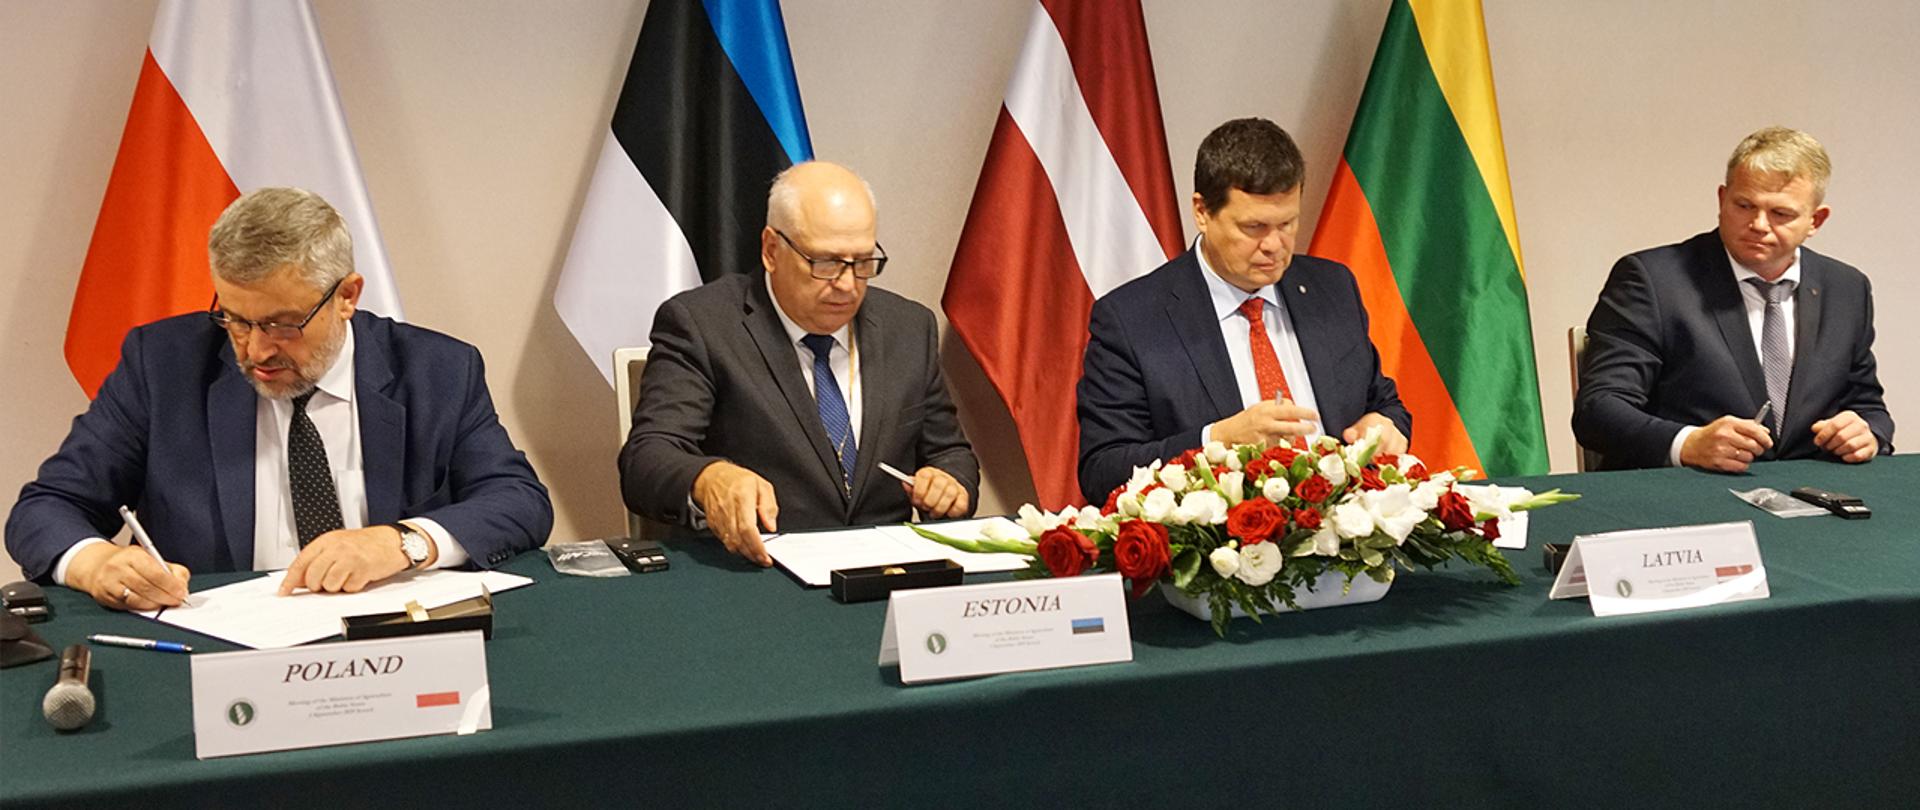 Podpisanie wspólnej deklaracji Ministrów Polski Estonii Litwy i Łotwy